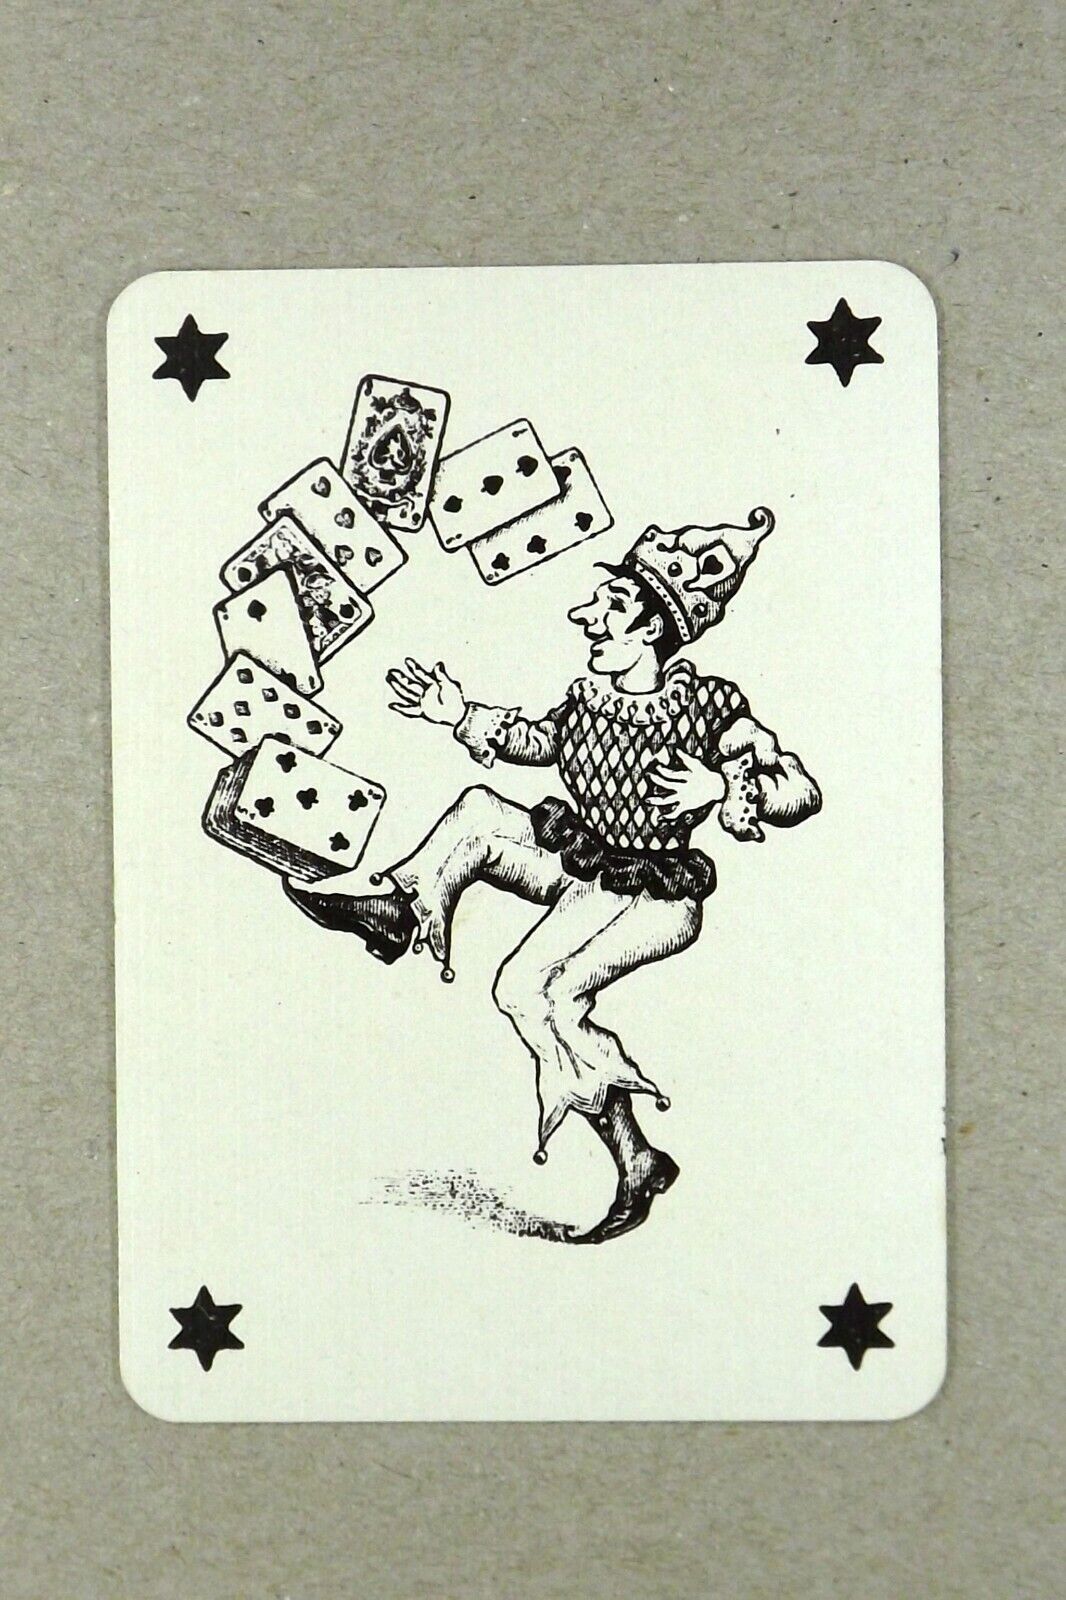 1 x Joker playing card balancing cards on foot Pegasus winged horse AC 441